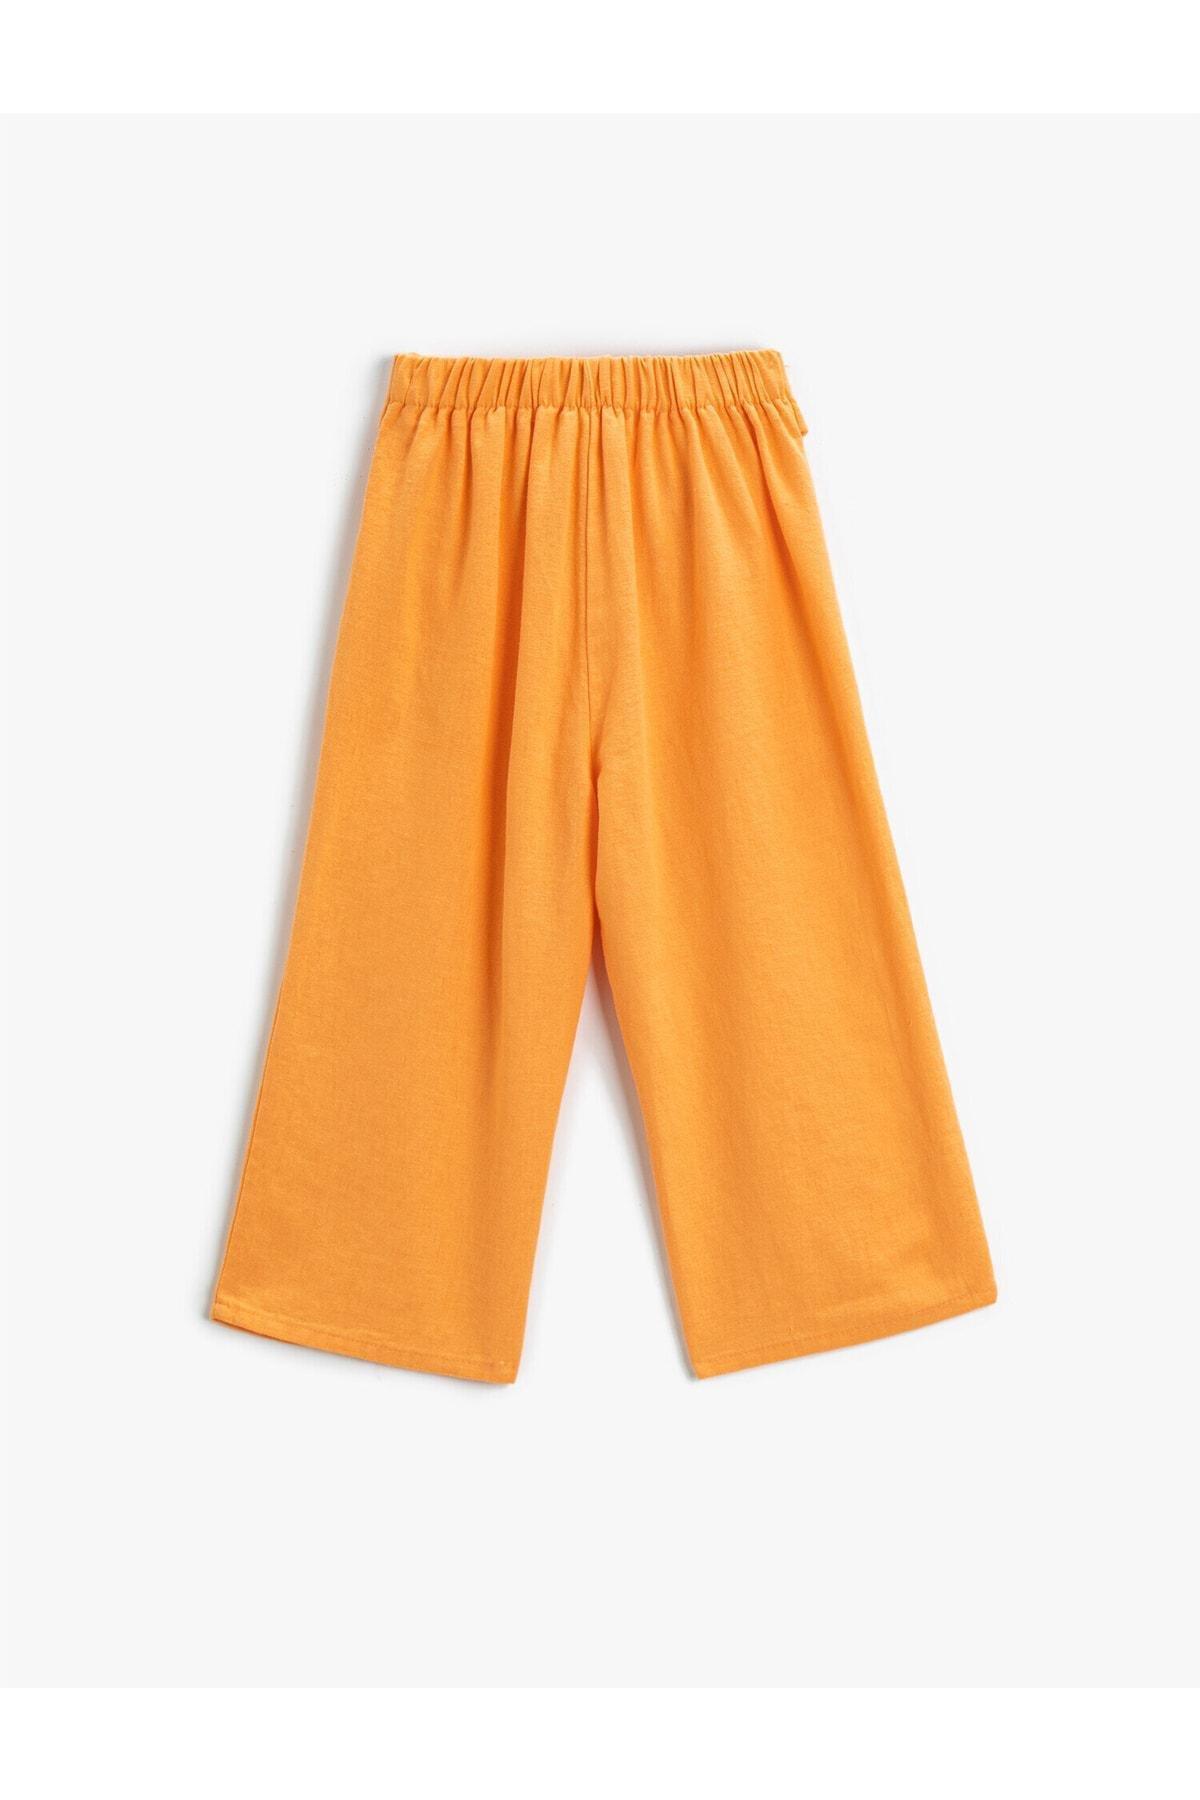 Koton - Orange Belted Trousers, Kids Girls